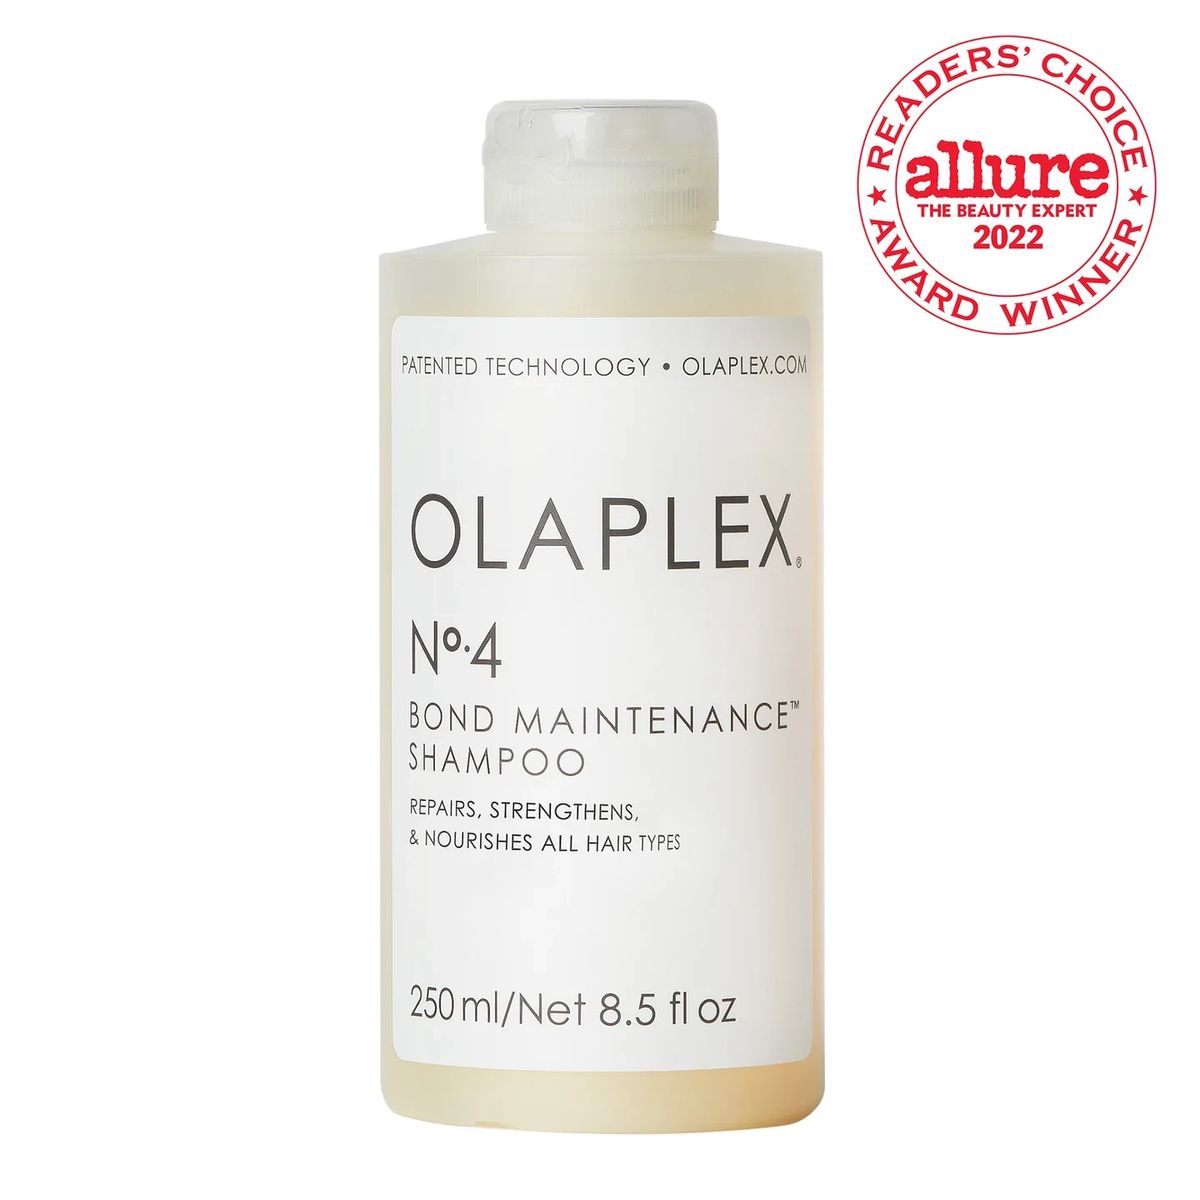 OLAPLEX N°.4 Bond Maintenance Shampoo